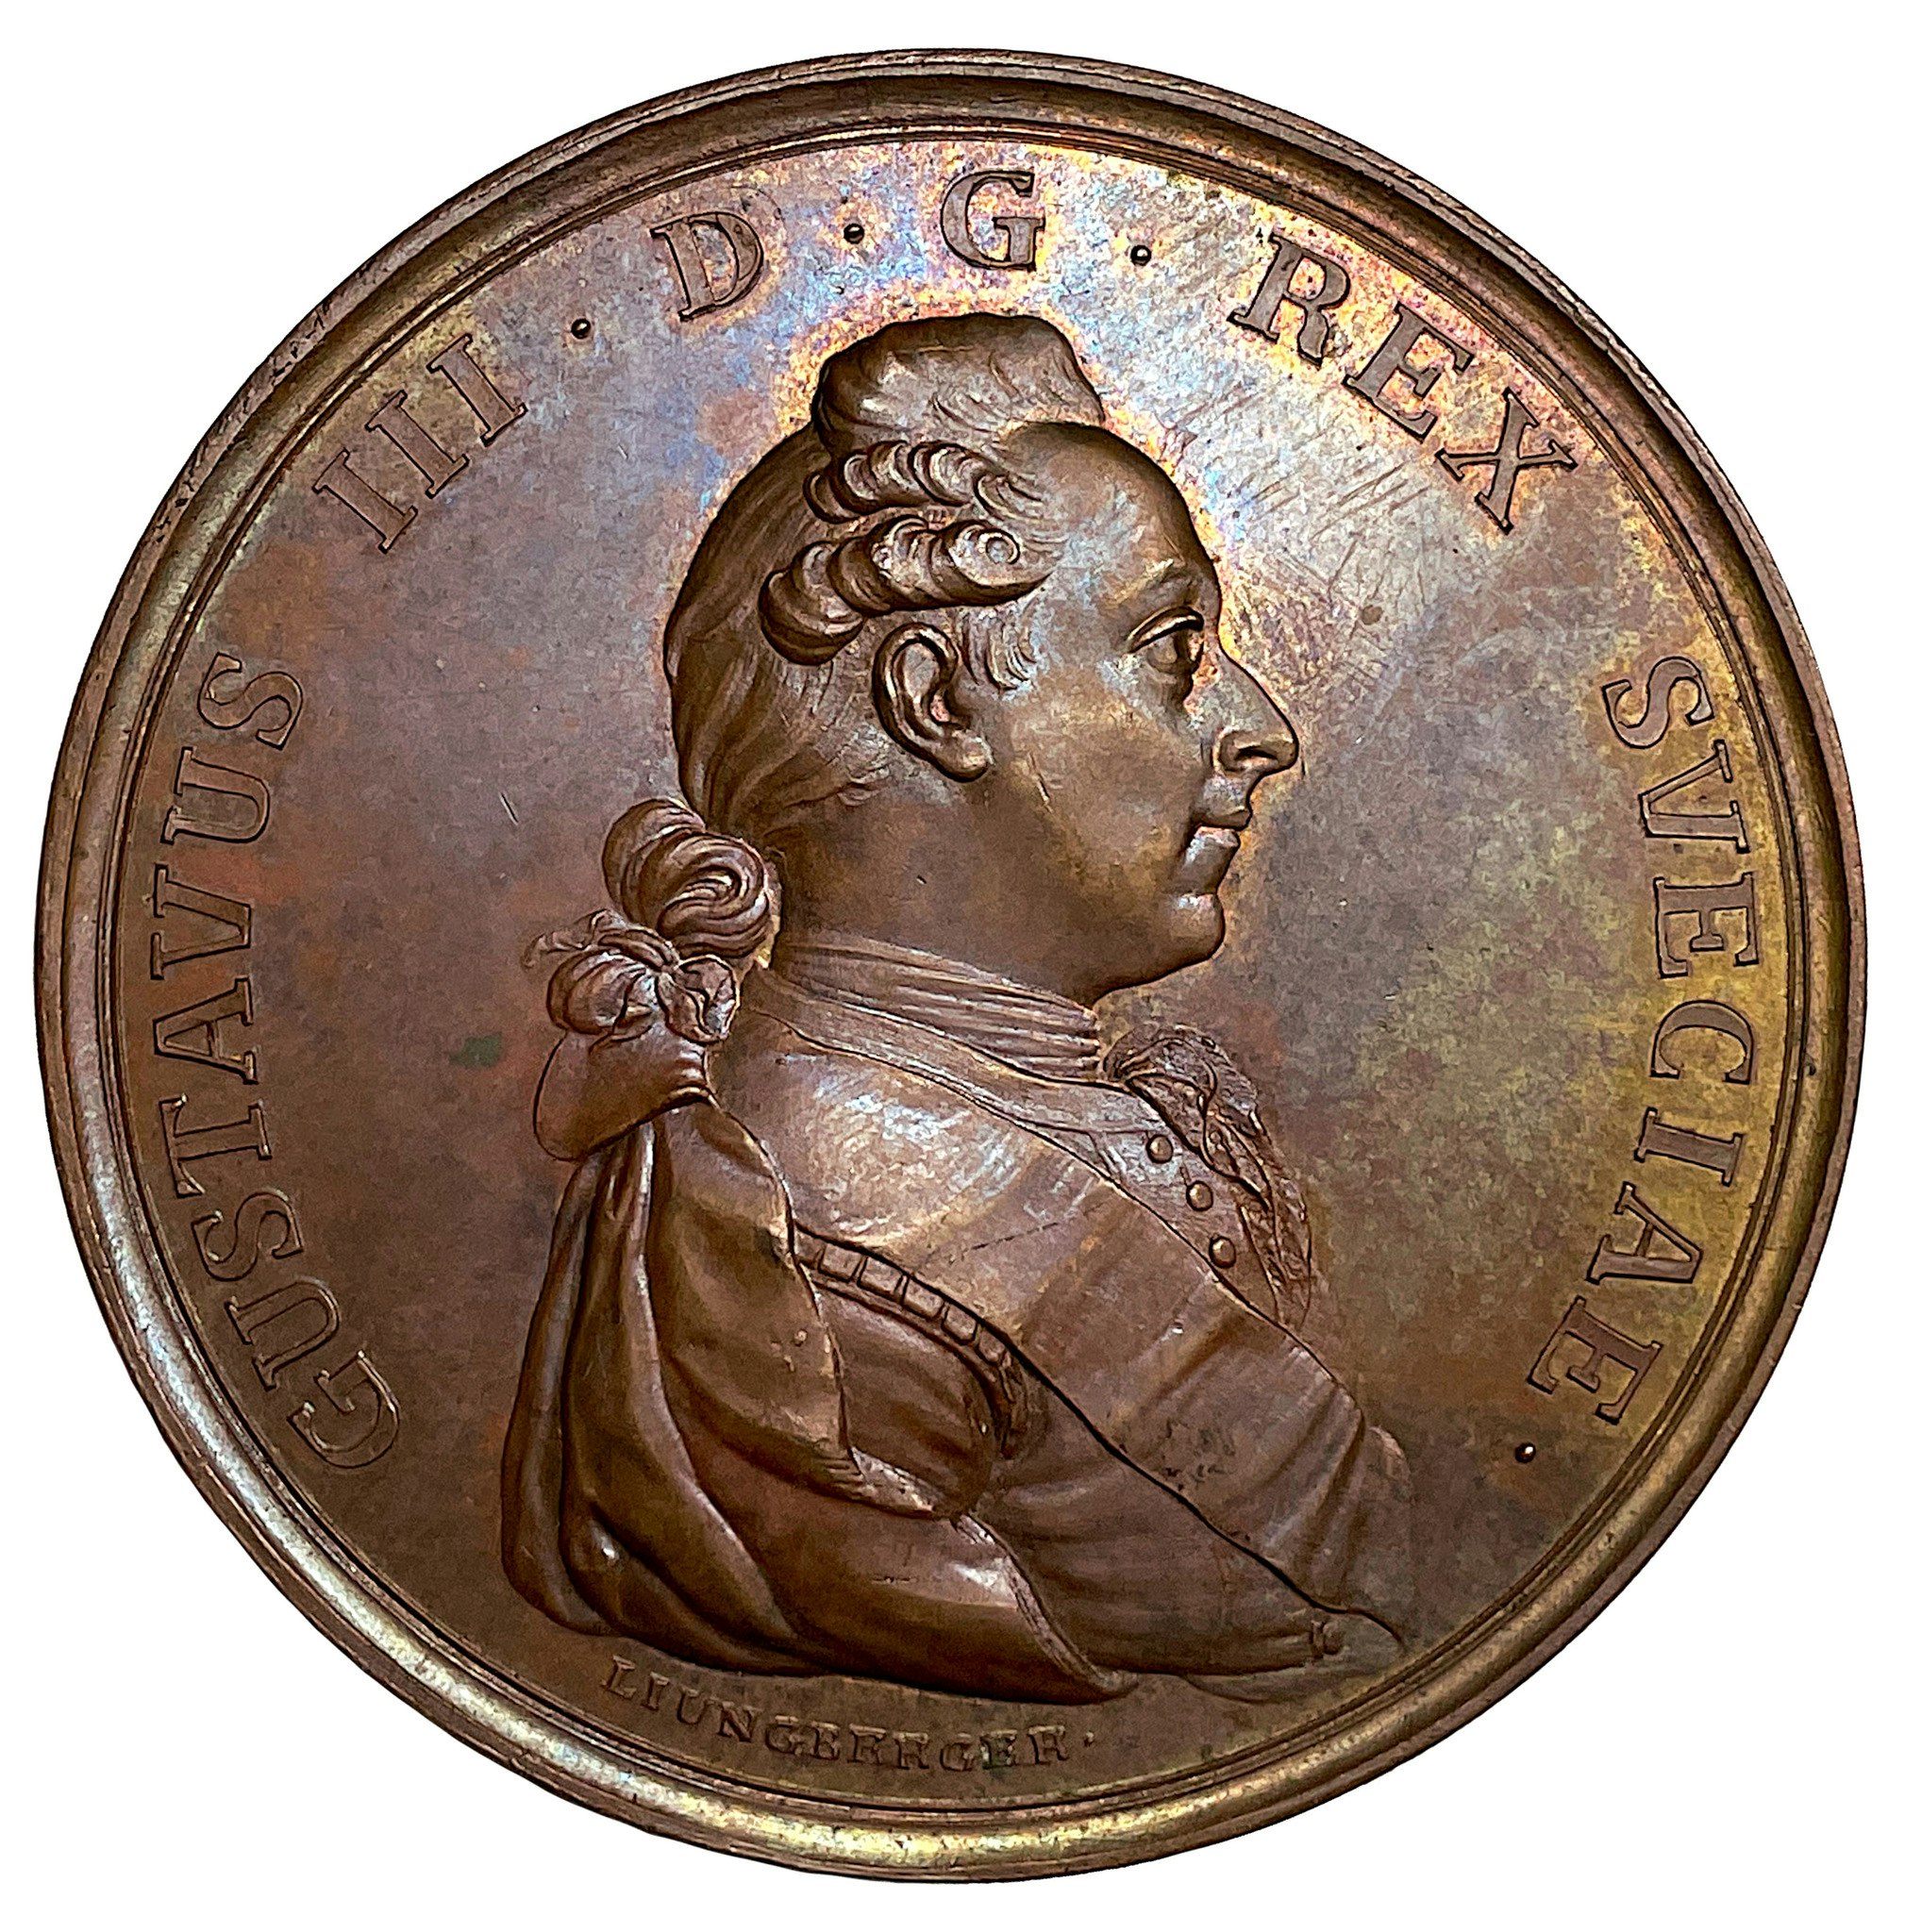 Gustav III hemkommer till Sverige i augusti 1790 efter kriget i Ryssland och freden i Värälä - Hybrid och EXTREMT SÄLLSYNT - RRR